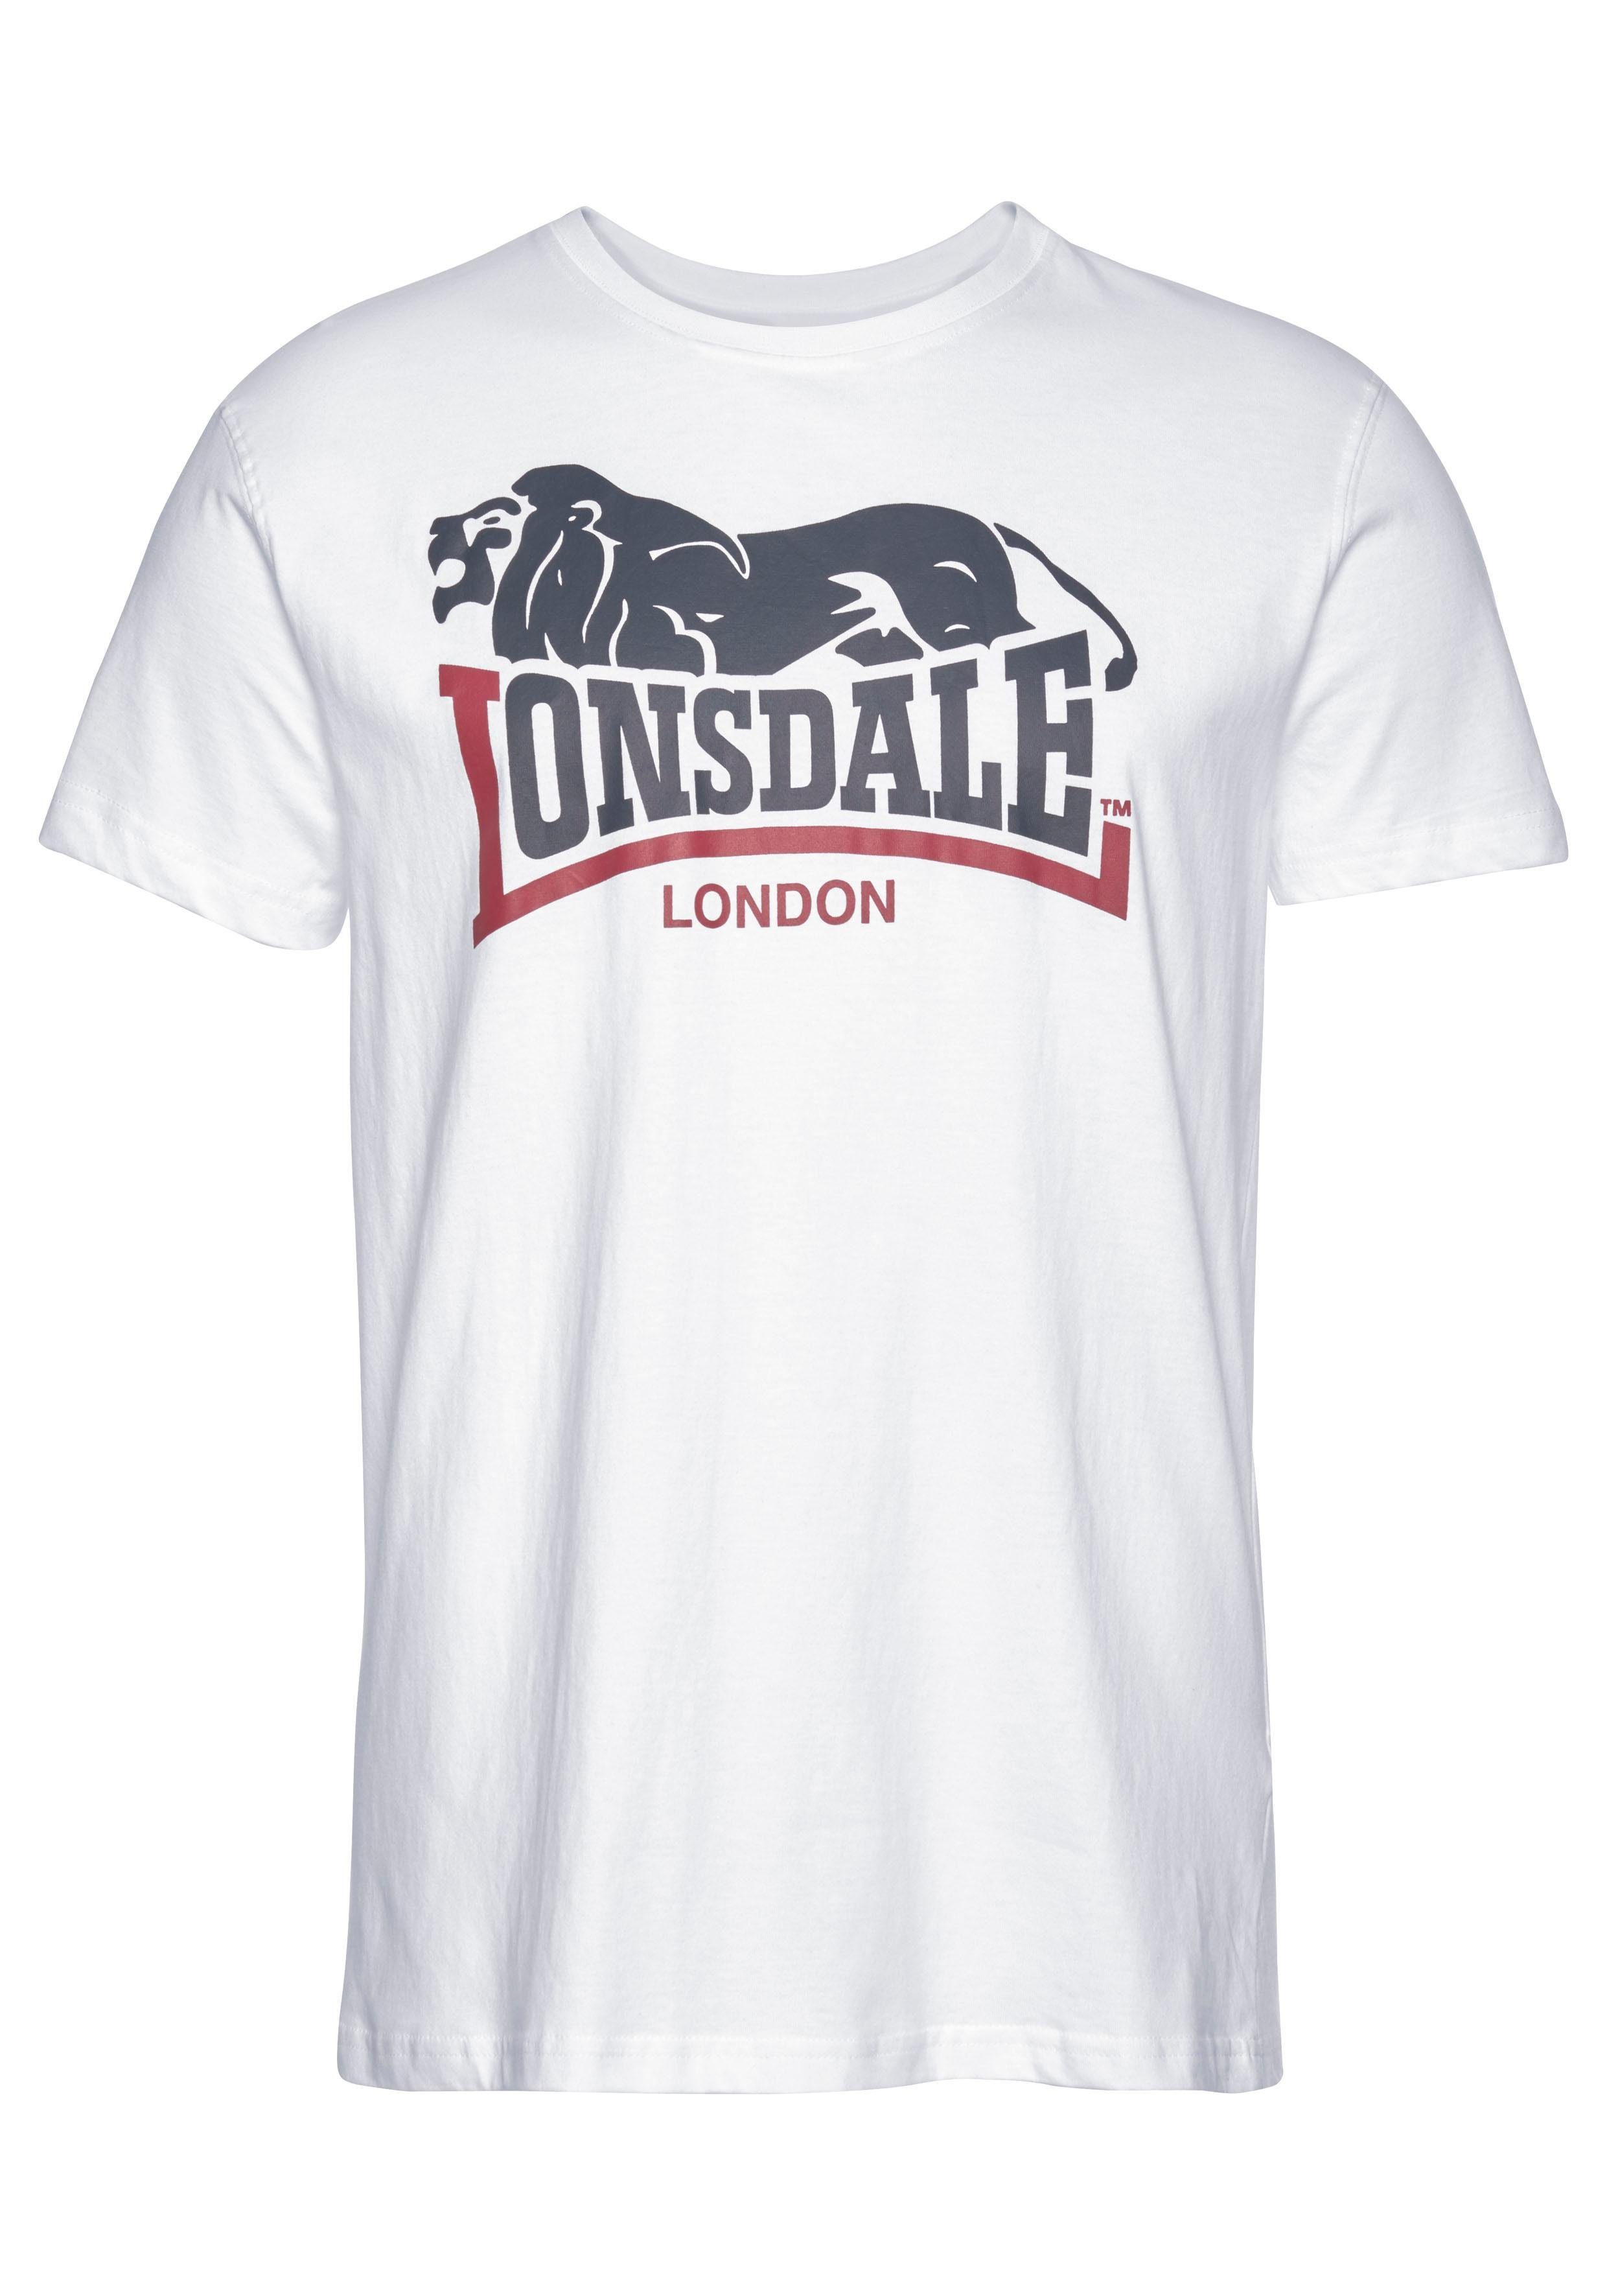 2-tlg., T-Shirt (Packung, LOSCOE Lonsdale 2er-Pack)